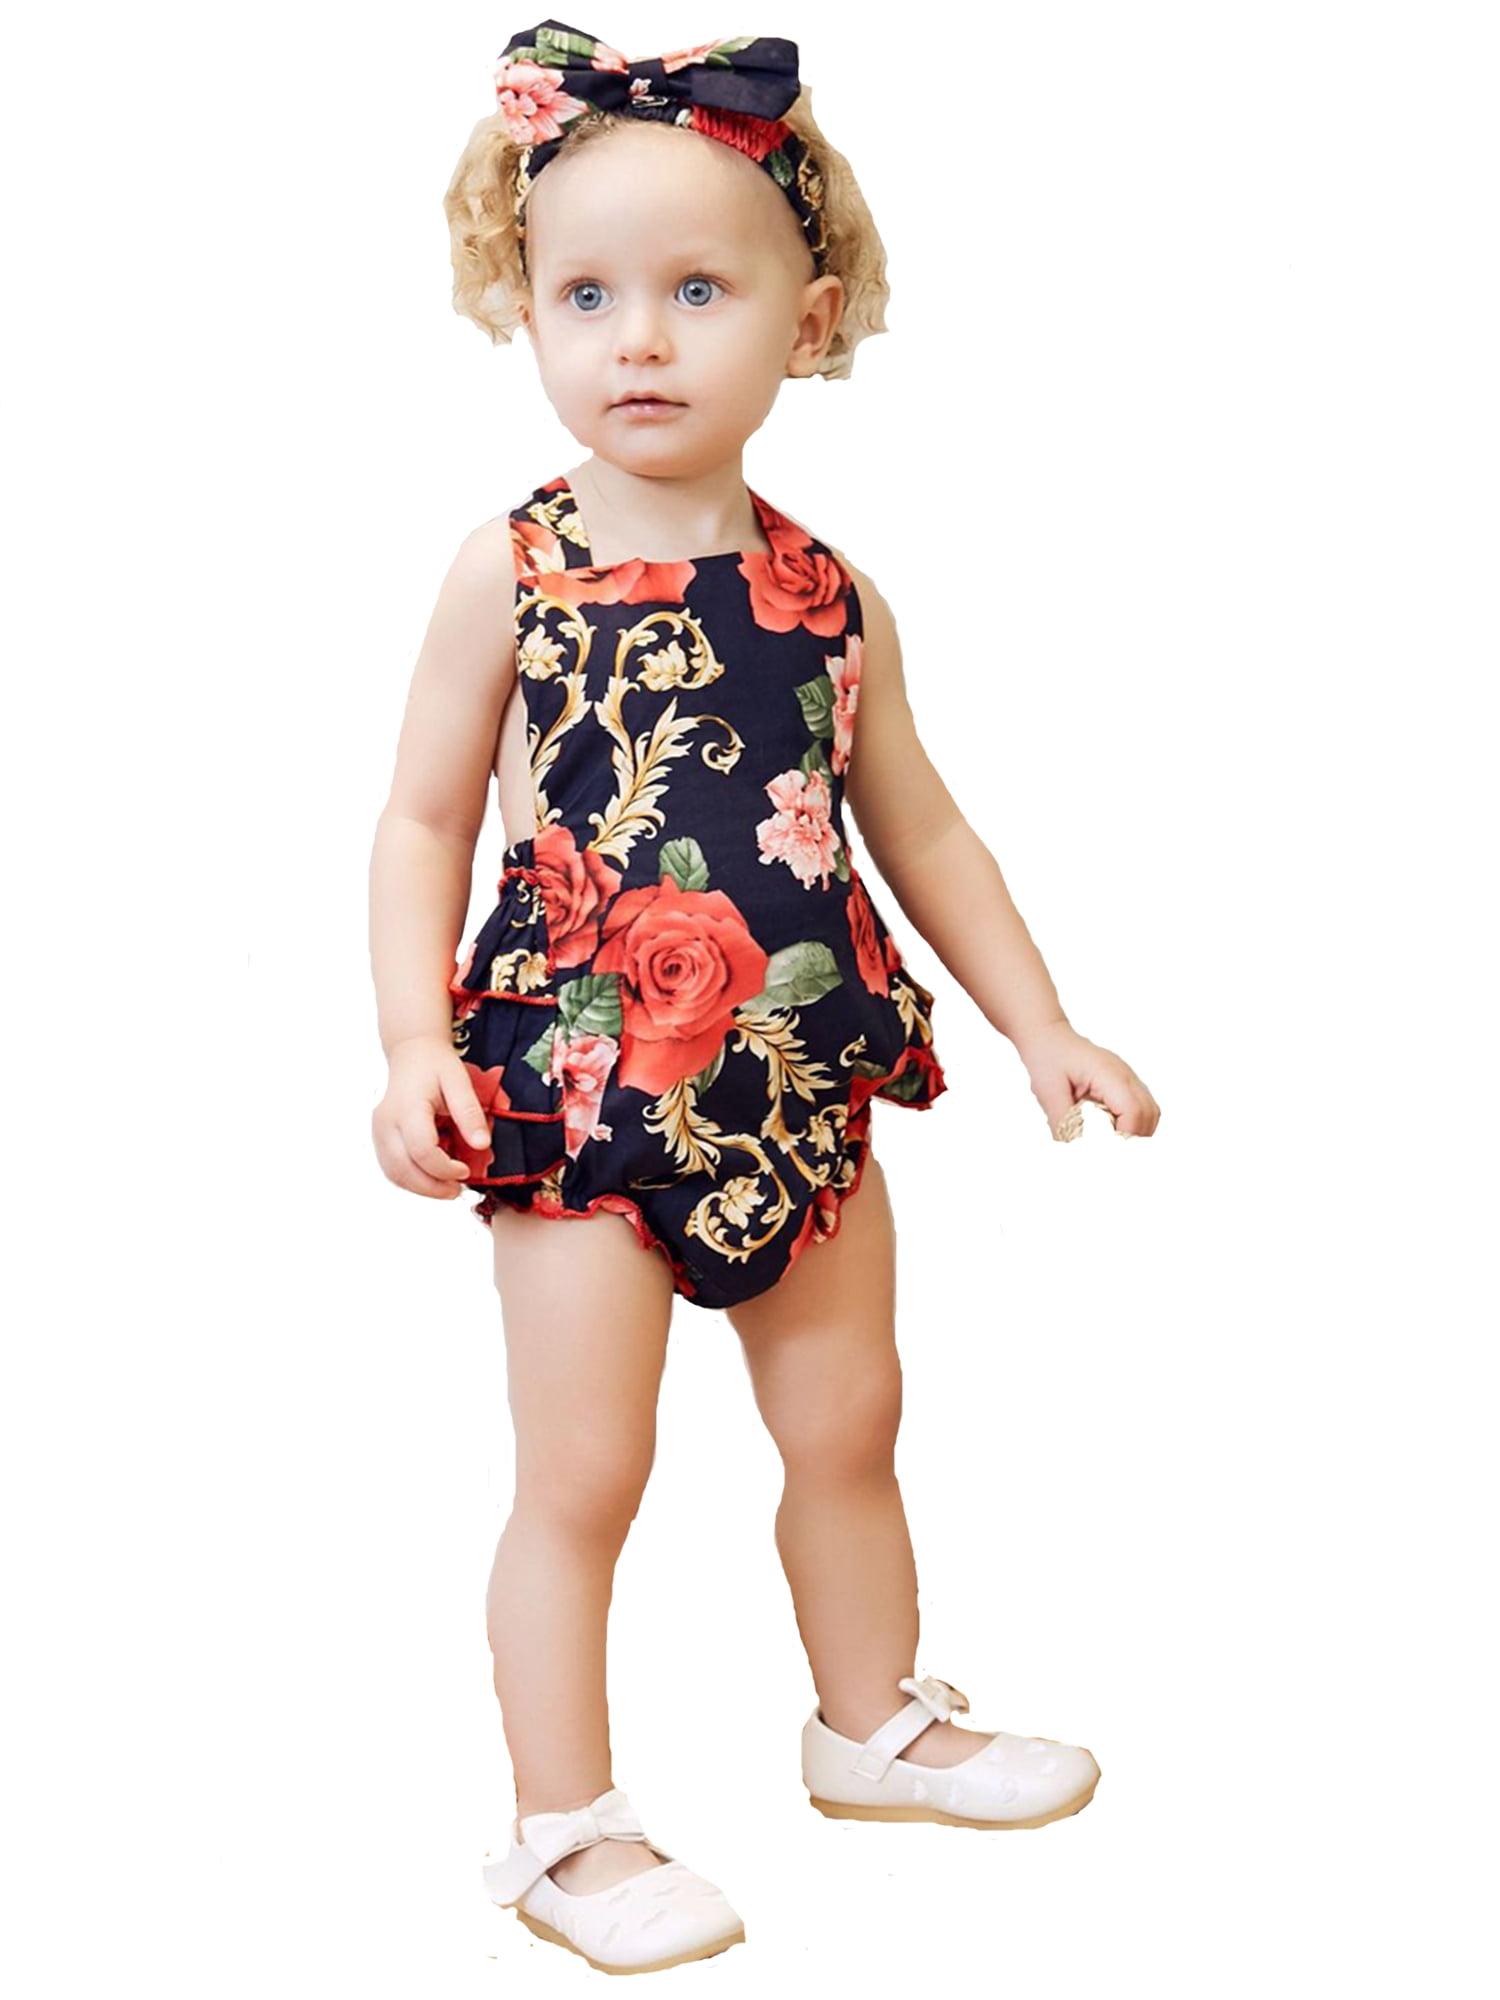 Newborn Infant Baby Girl Floral Romper Bodysuit Jumpsuit Outfits Sunsuit Clothes 